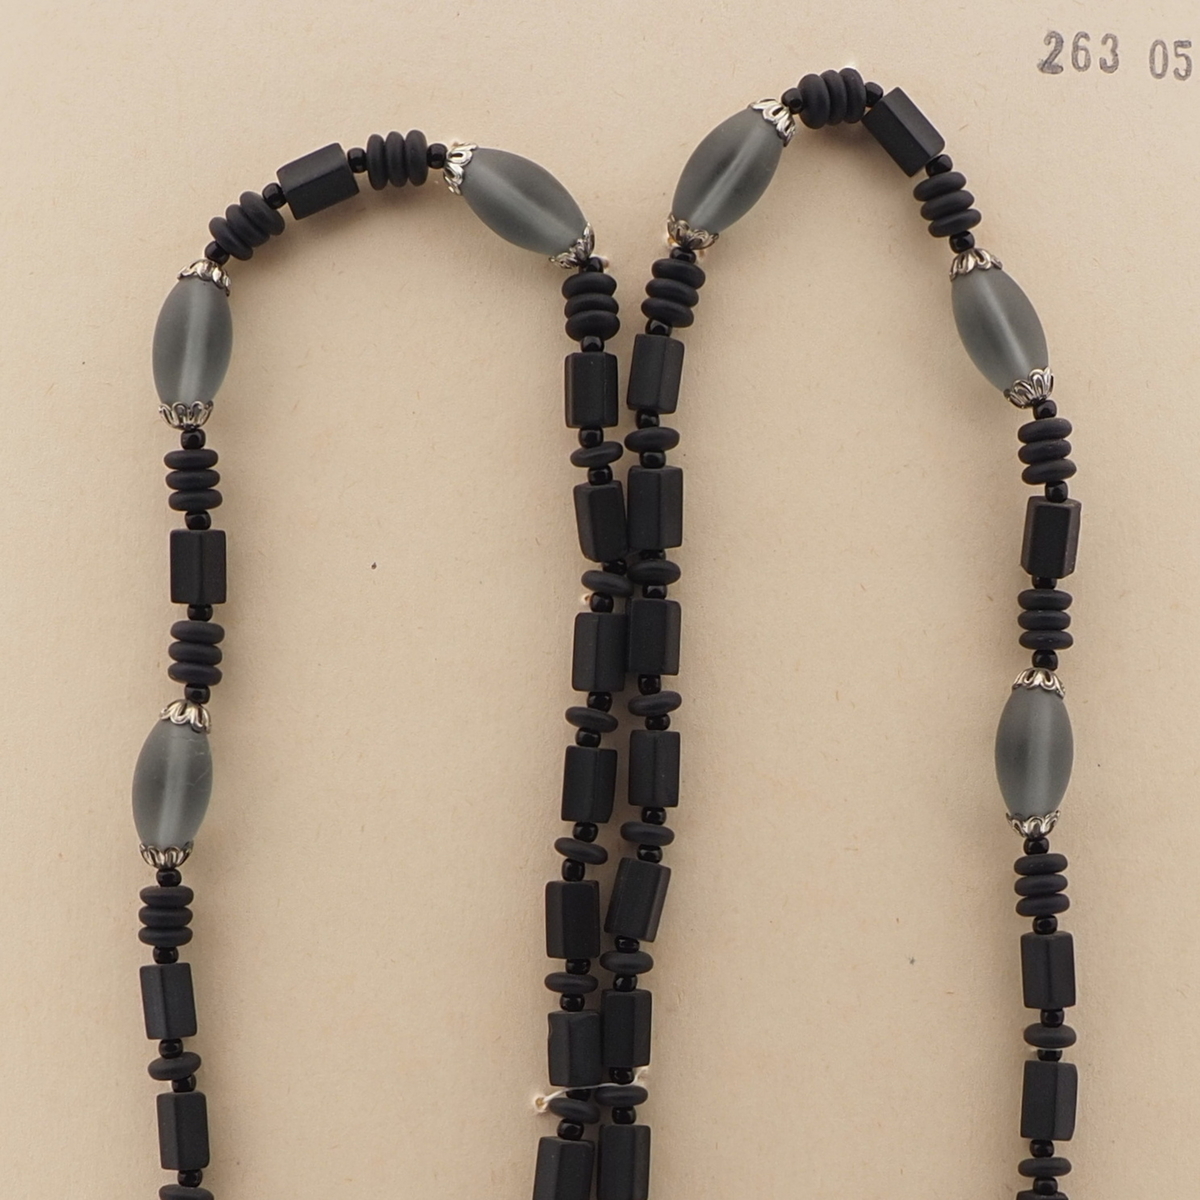 Vintage Czech necklace matte black aqua glass beads